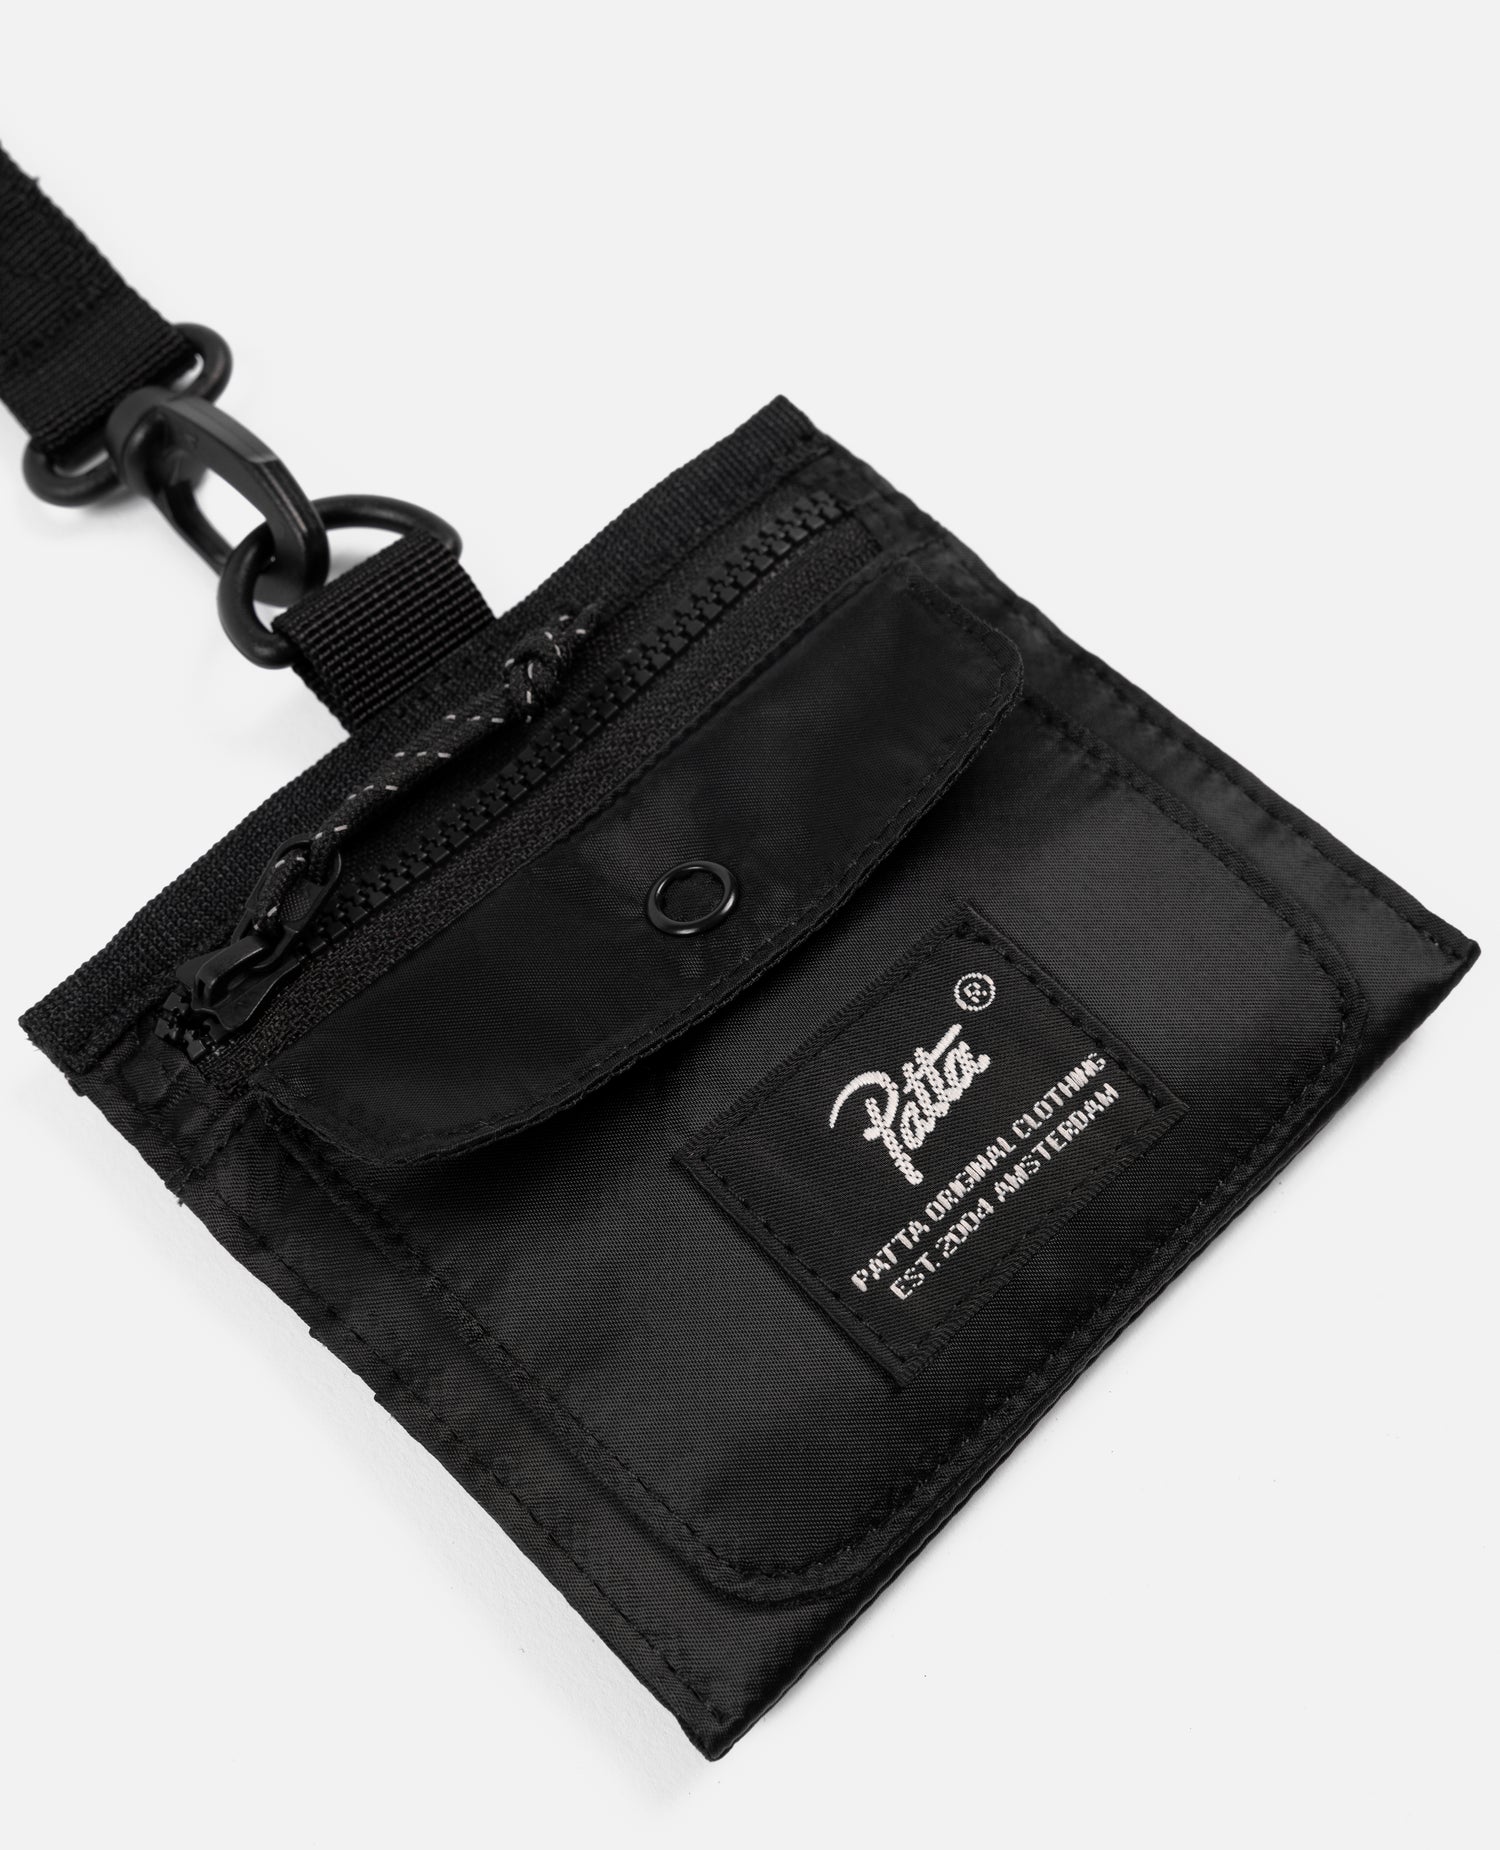 Patta Tactical Wallet (Black)